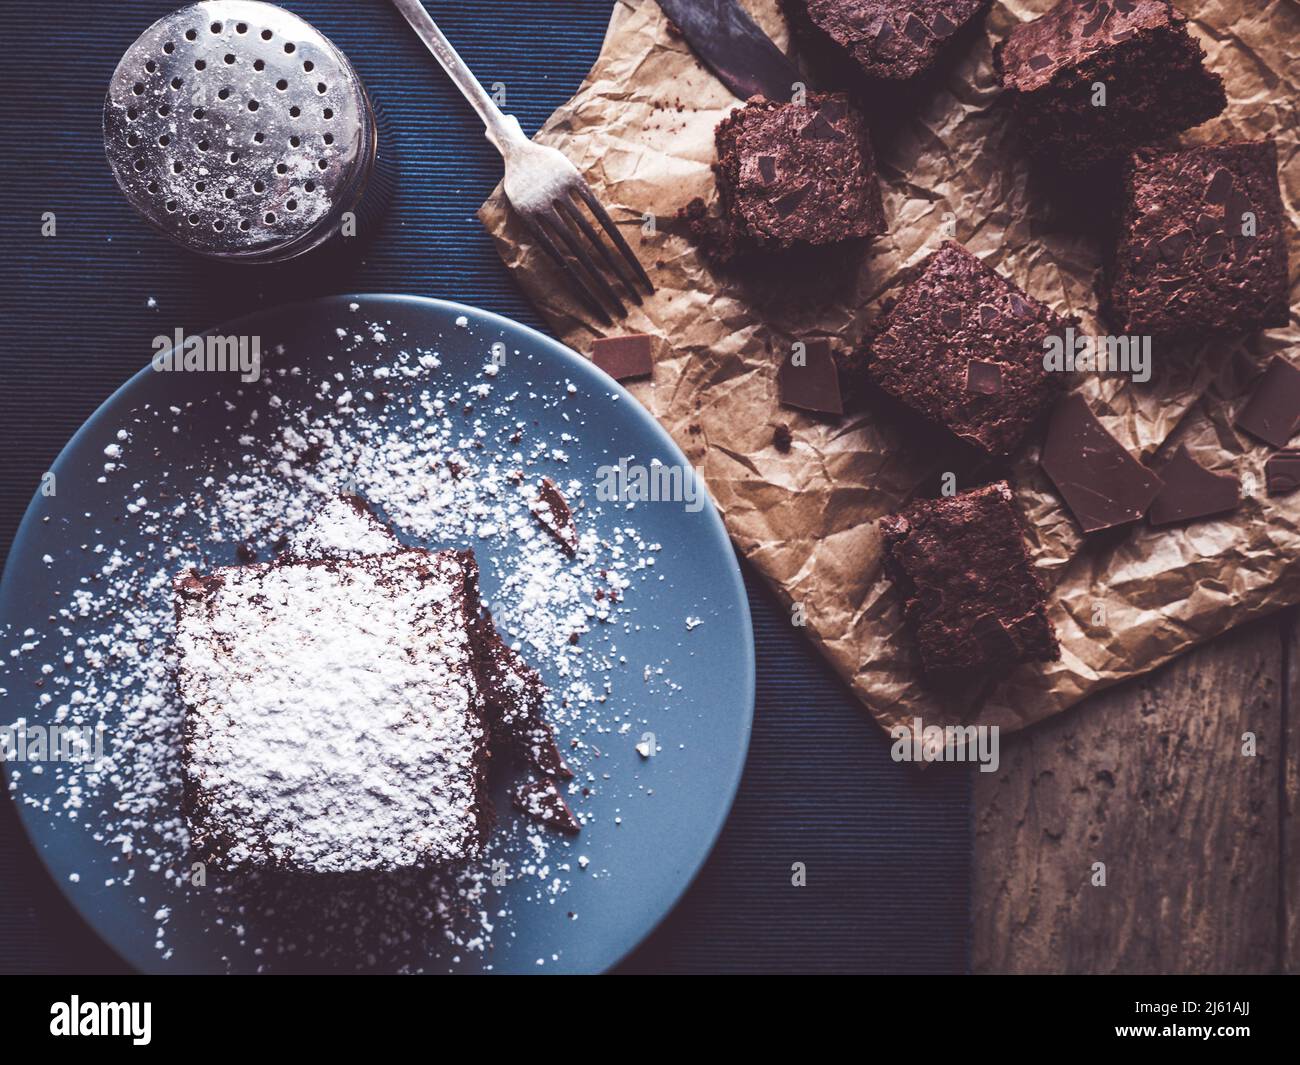 l'image montre un topview de brownies maison décored avec de la poudre de sucre sur table rustique en bois; quelques autres brownies sur papier de cuisson; shaker supplémentaire o Banque D'Images